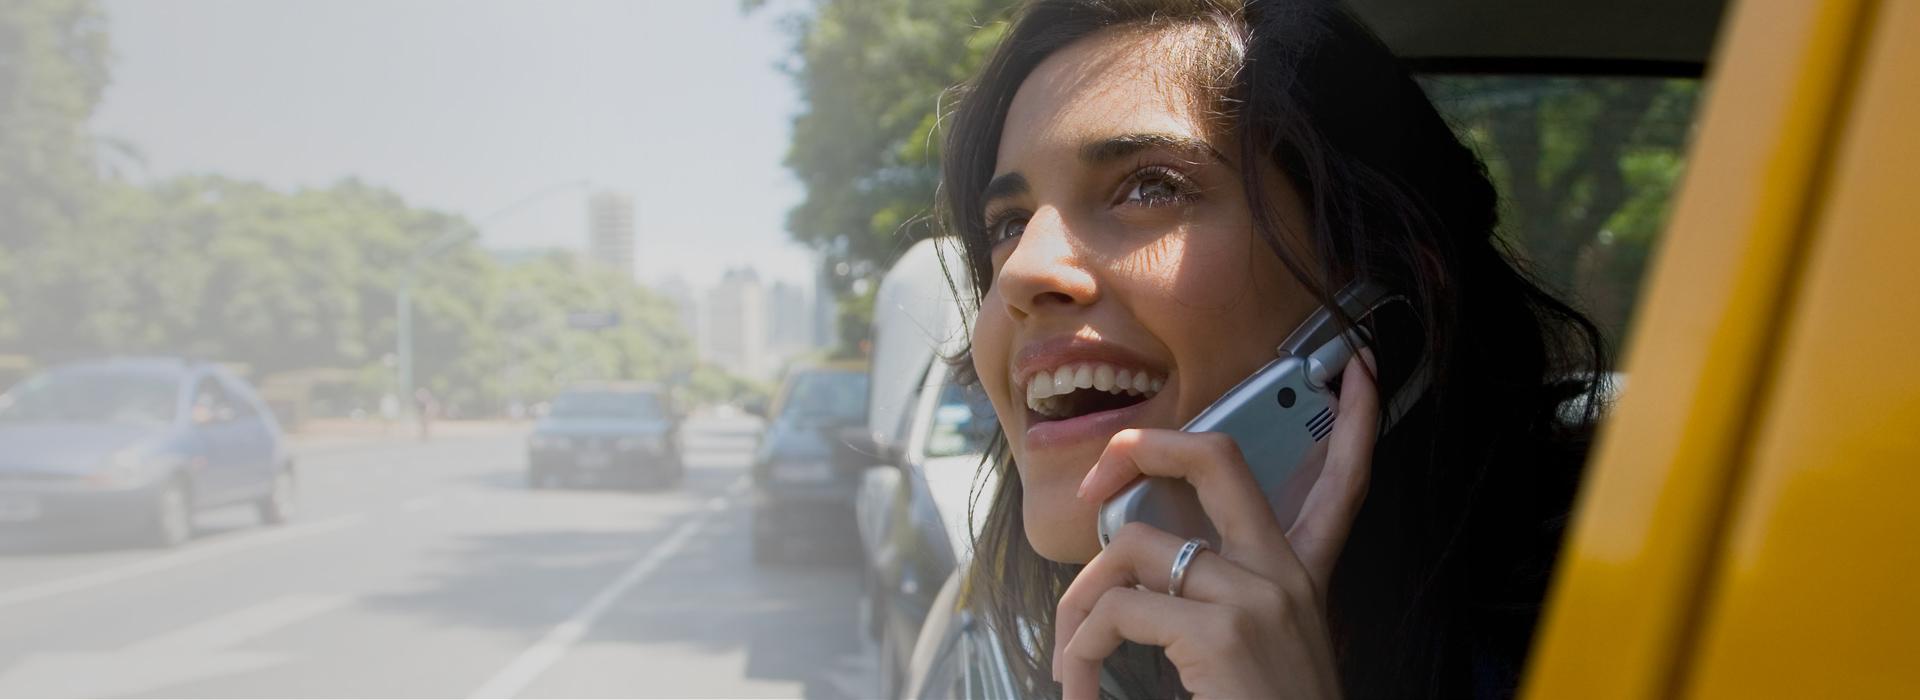 Slajd 2 kobieta rozmawiająca przez telefon w taksówce